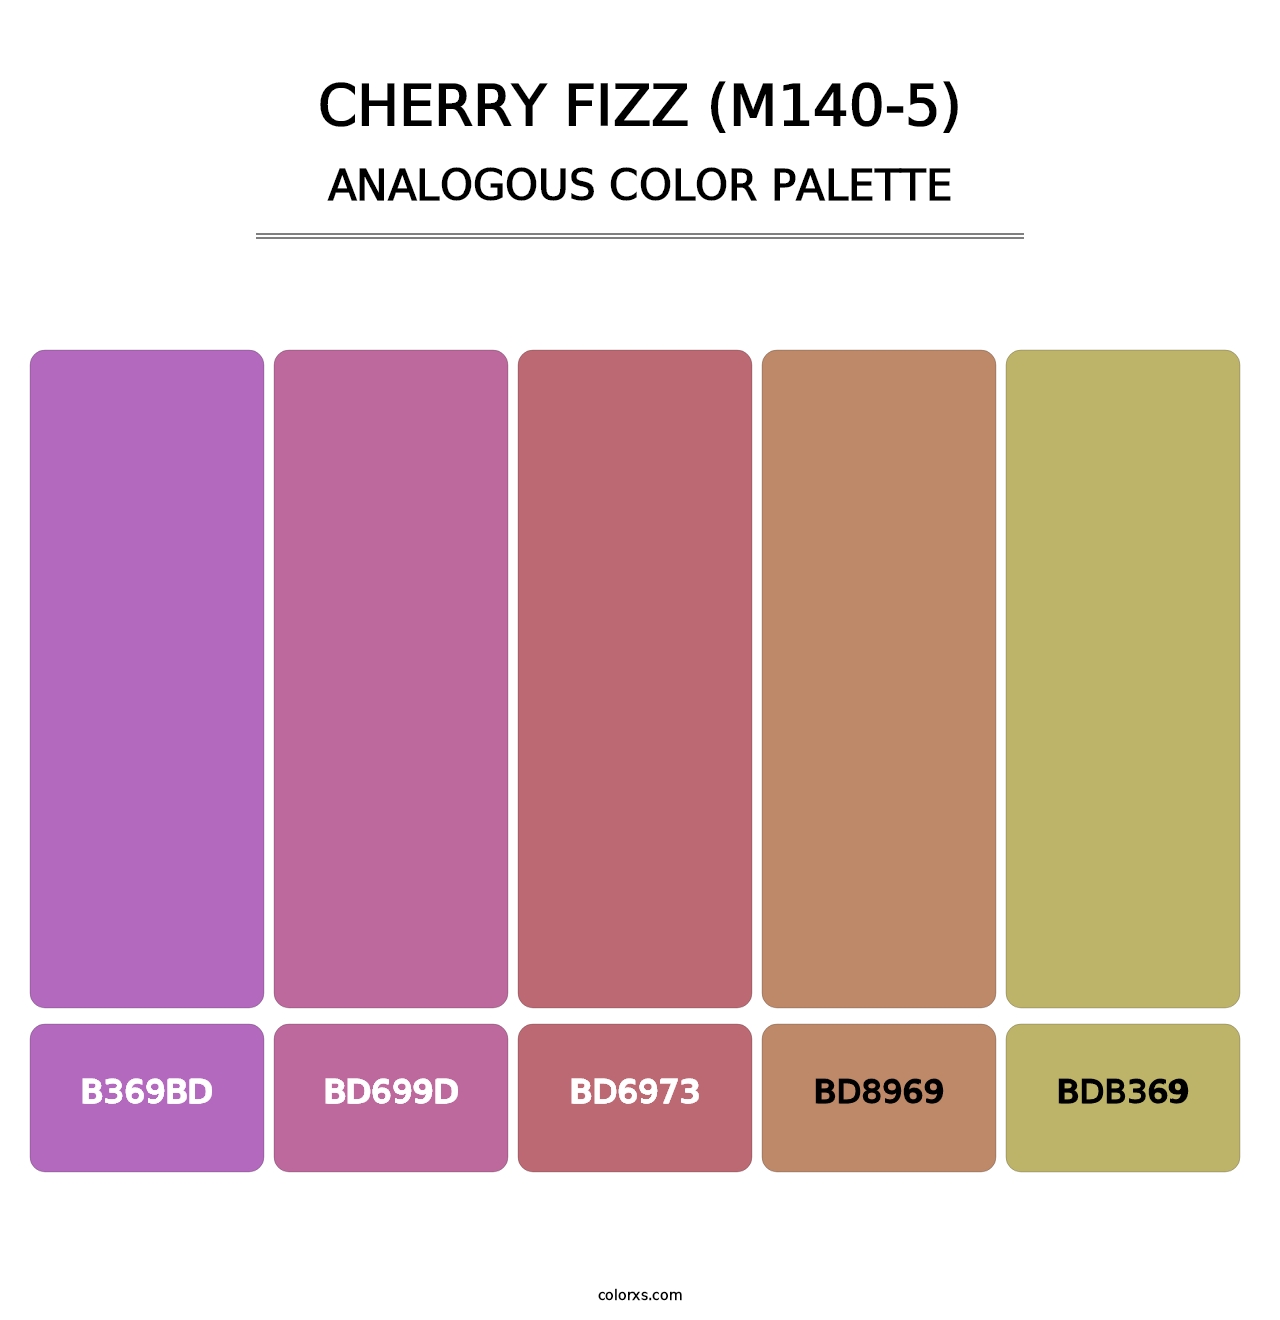 Cherry Fizz (M140-5) - Analogous Color Palette